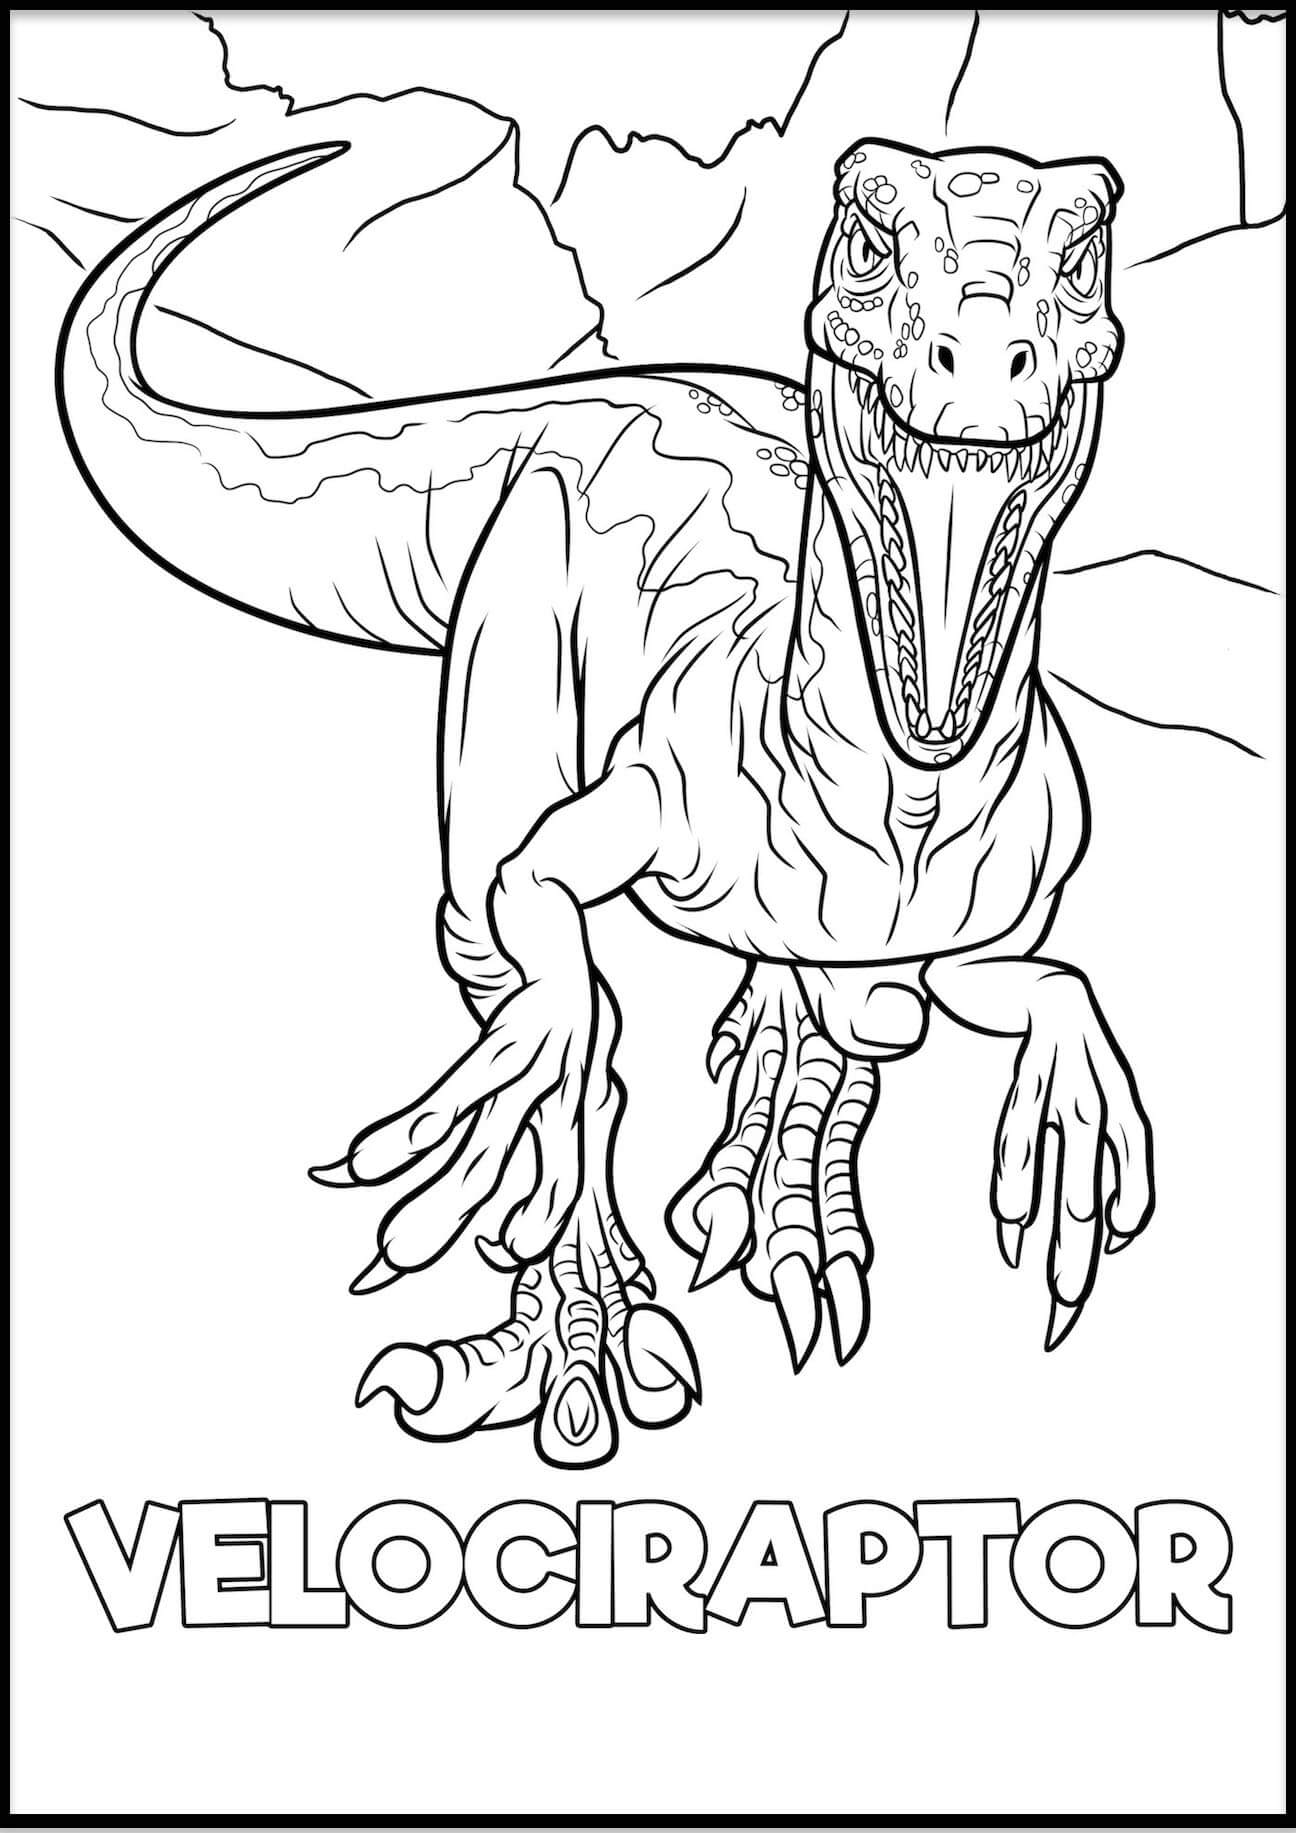 Velociraptor fargelegging